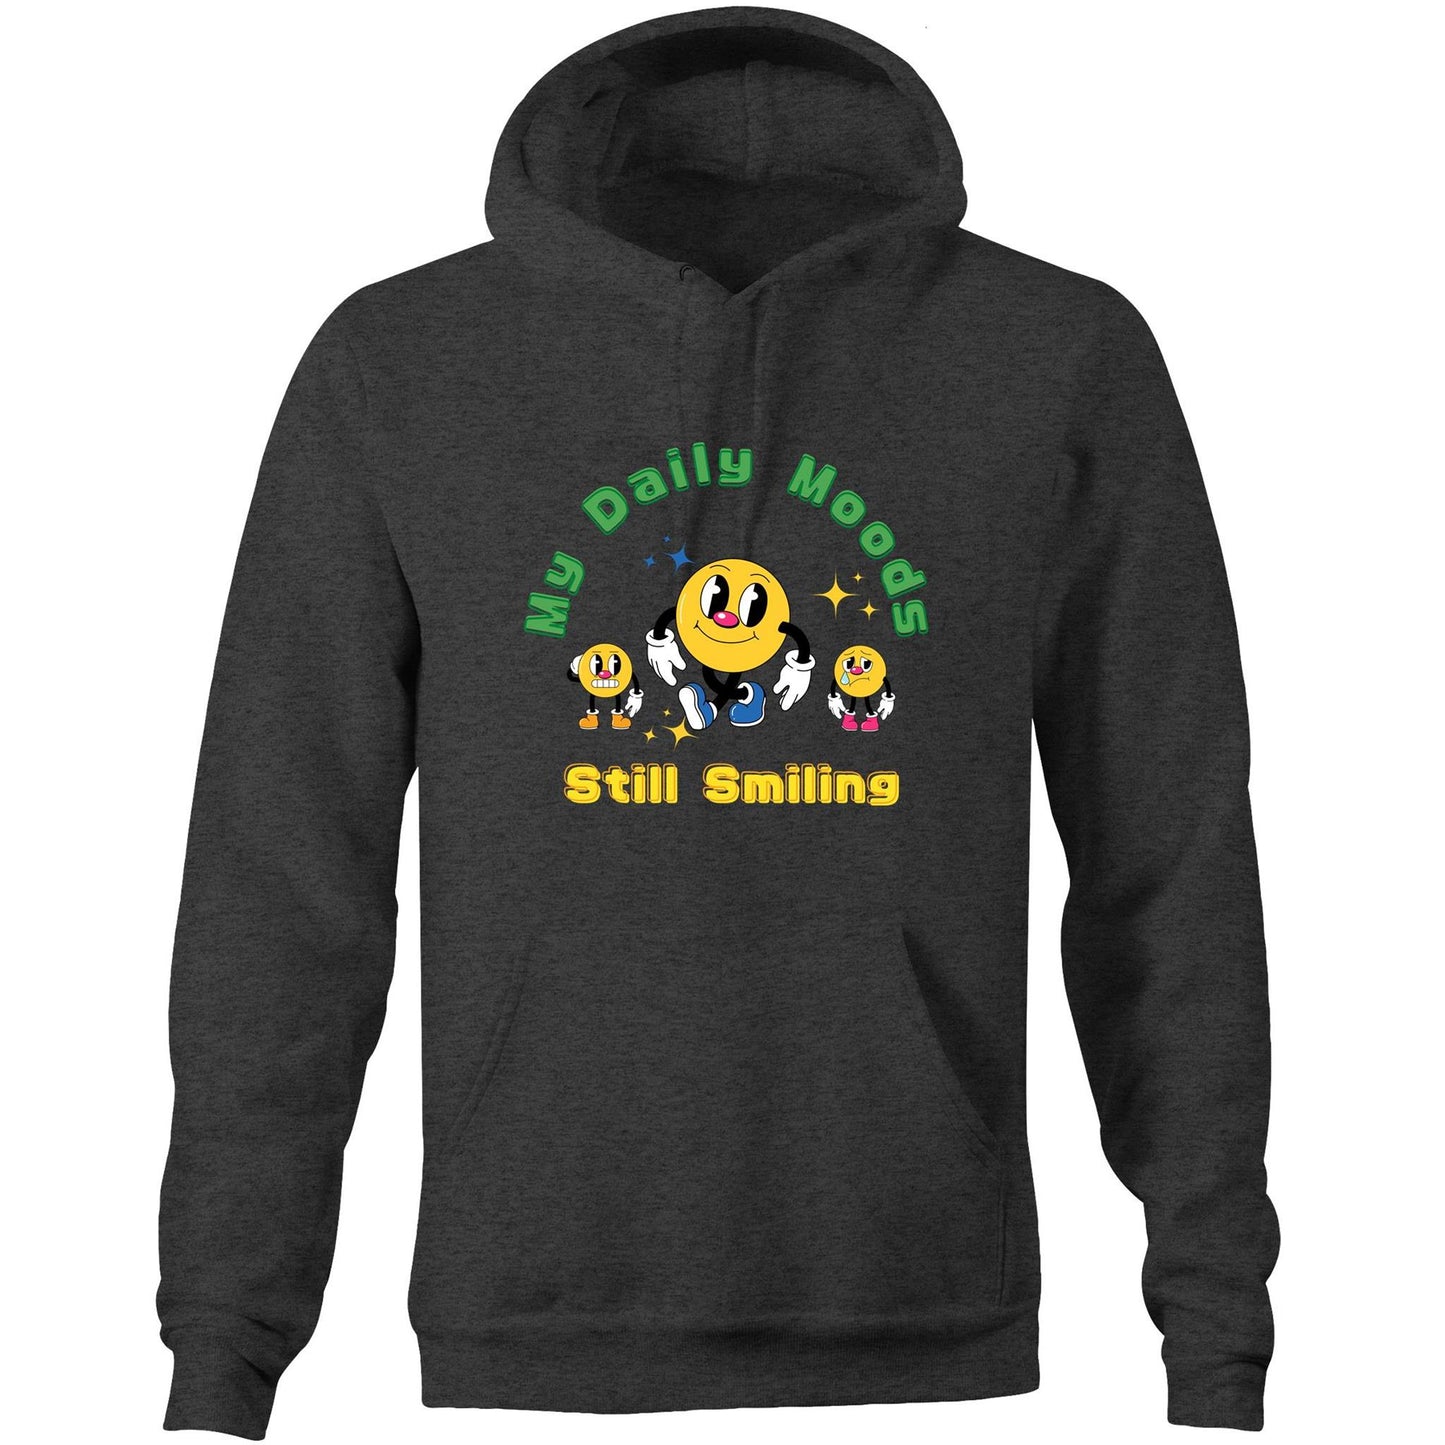 My Daily Moods - Pocket Hoodie Sweatshirt Asphalt Marle Hoodie